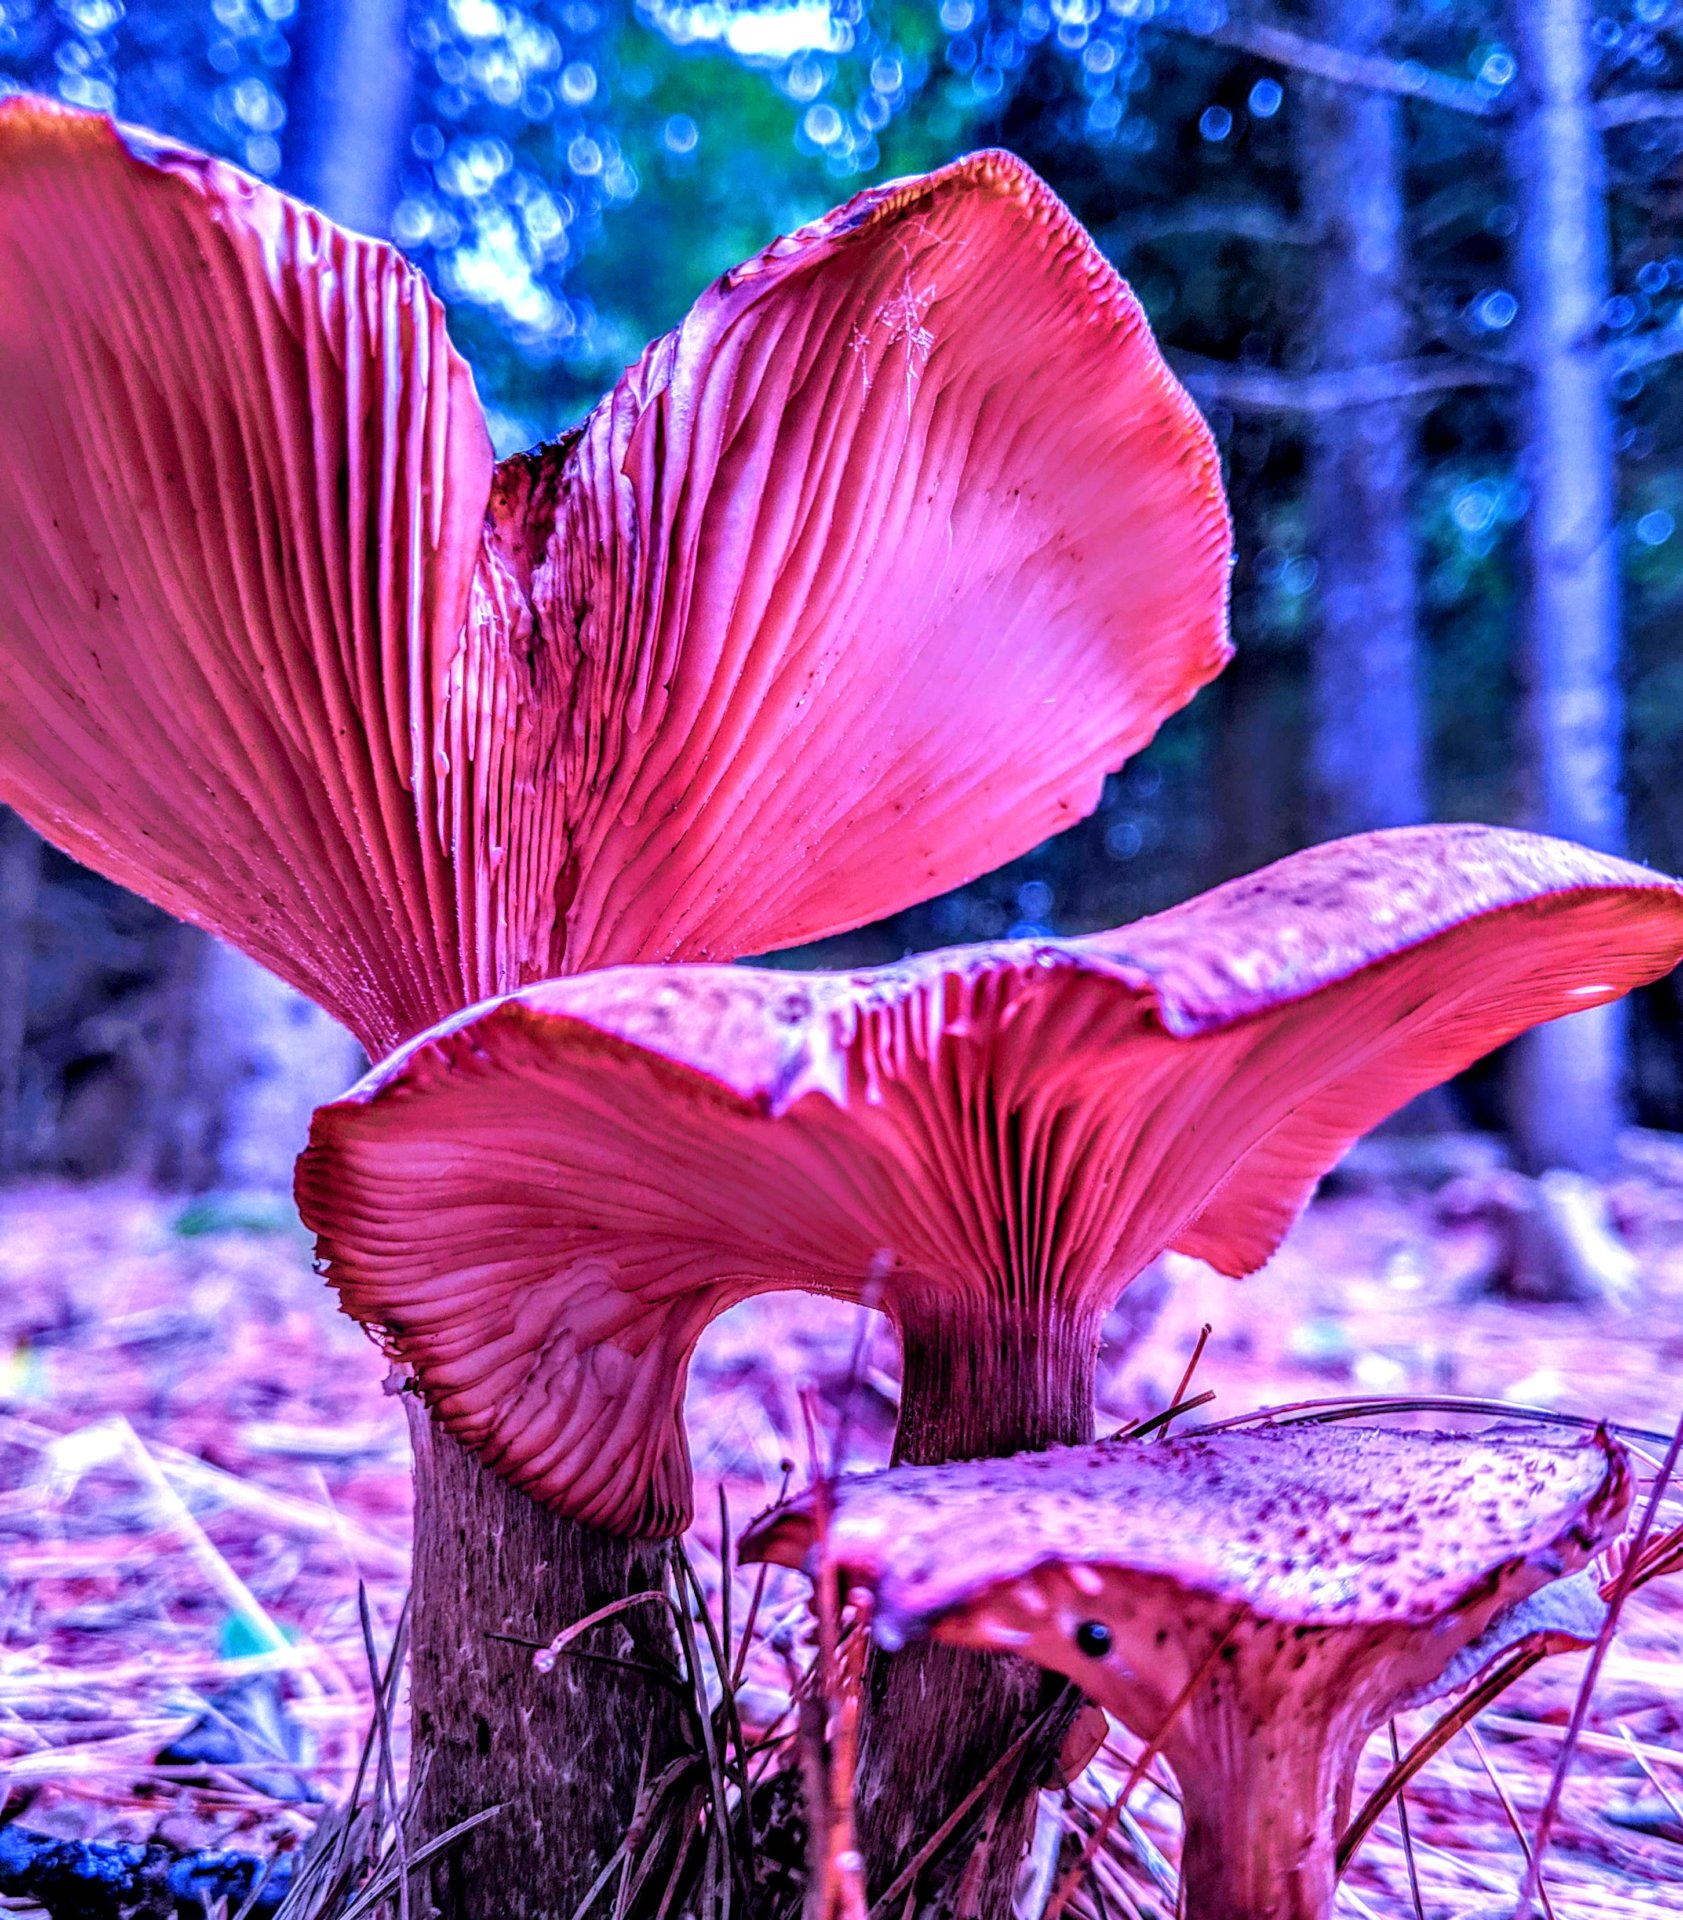 Angel looking three pair of mushrooms, in Downeast, Maine. 2019